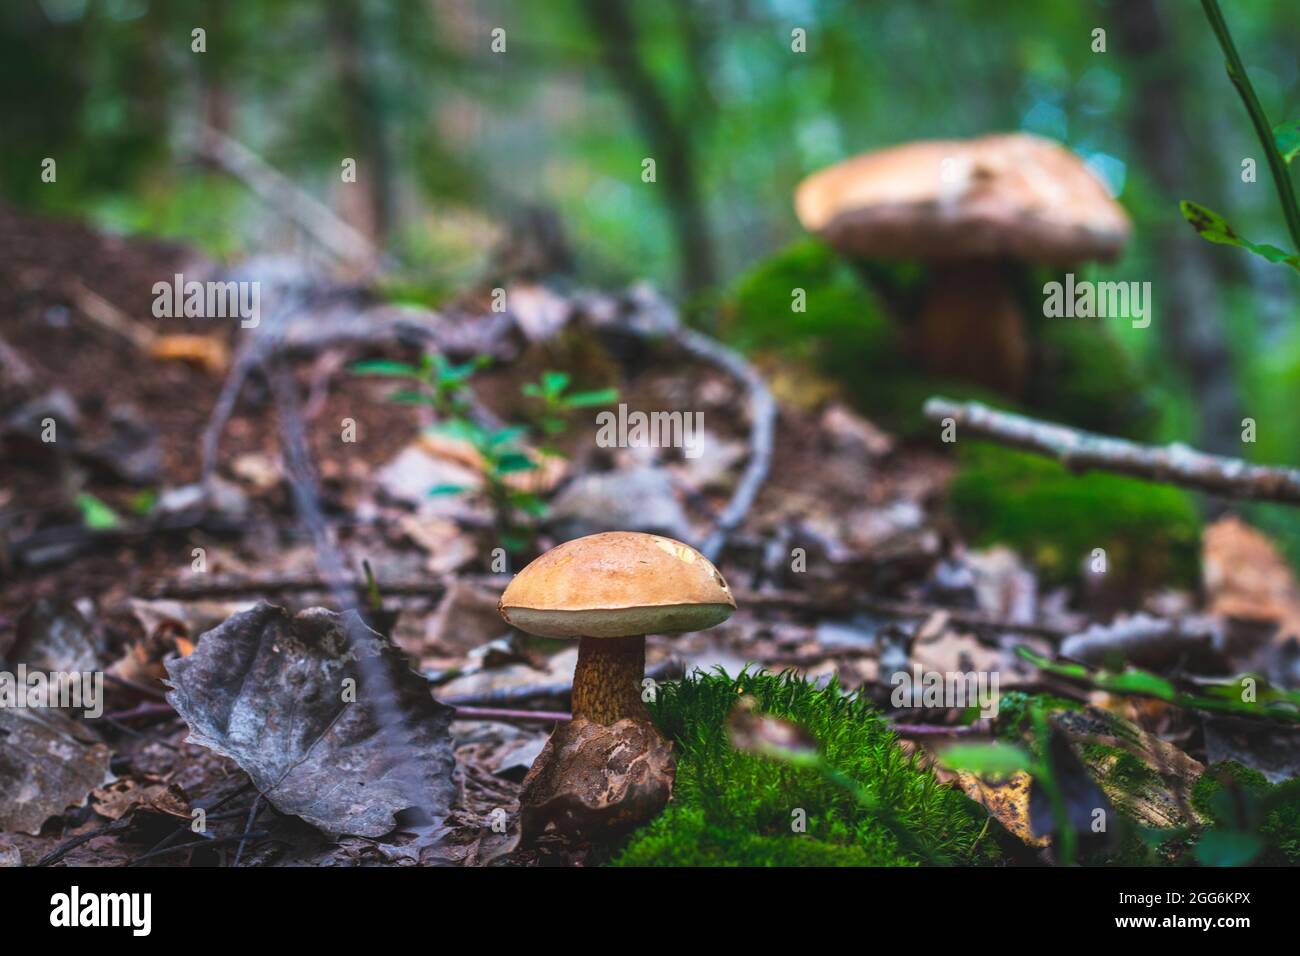 Funghi immangiabili nella foresta vicino all'aneto Foto Stock